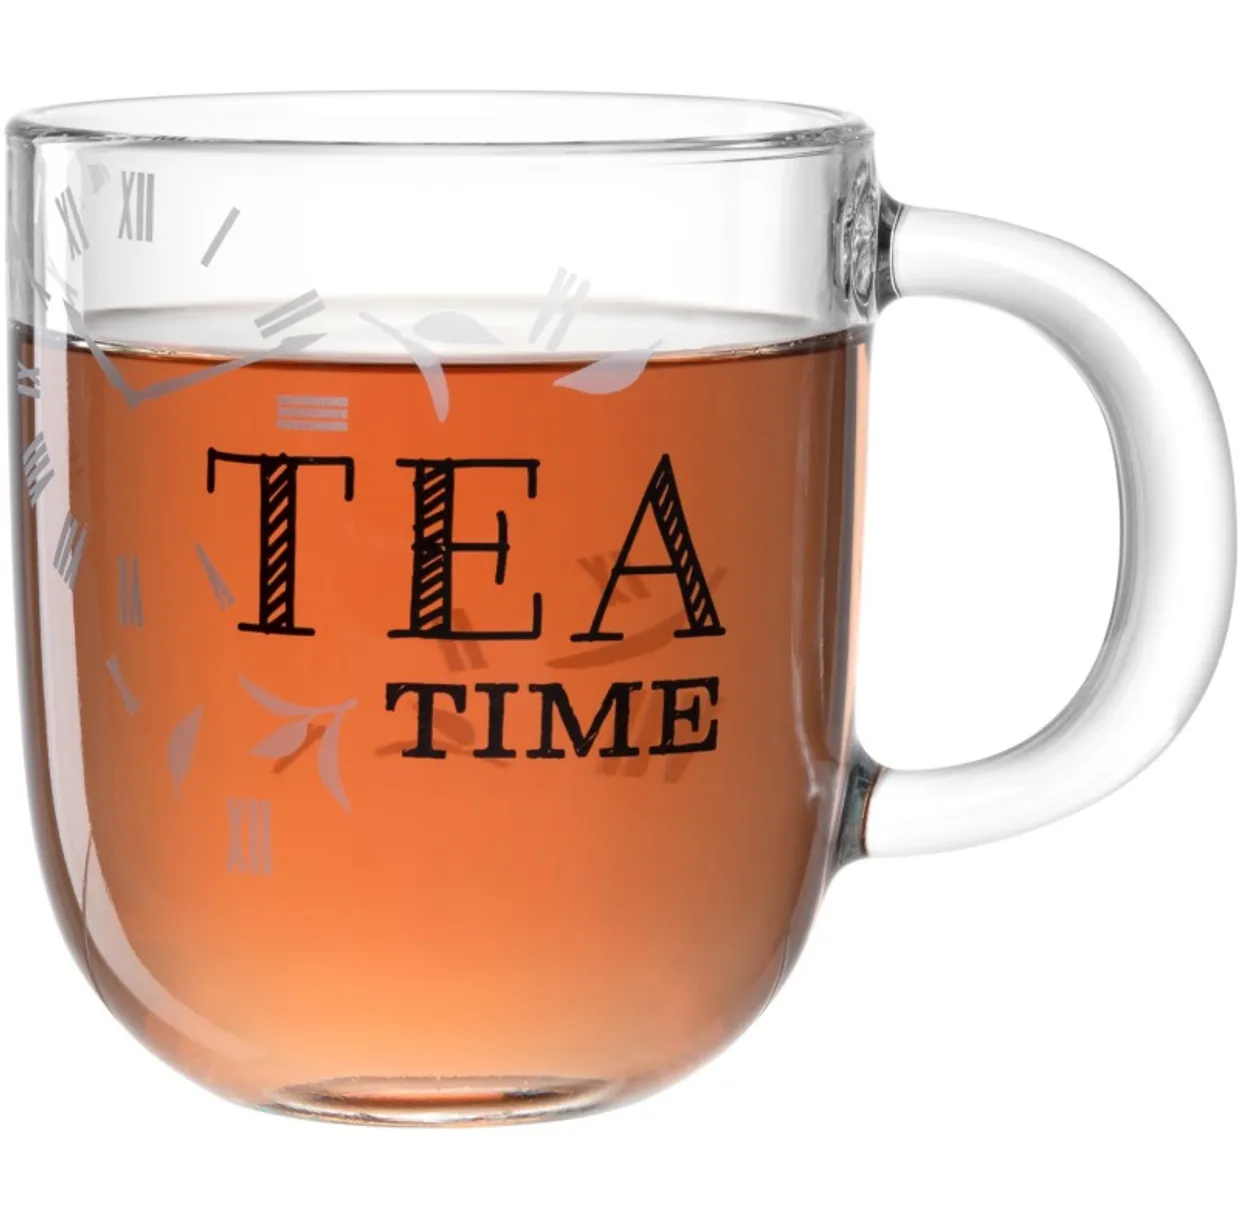 Theeglas 400ml - Tea Time